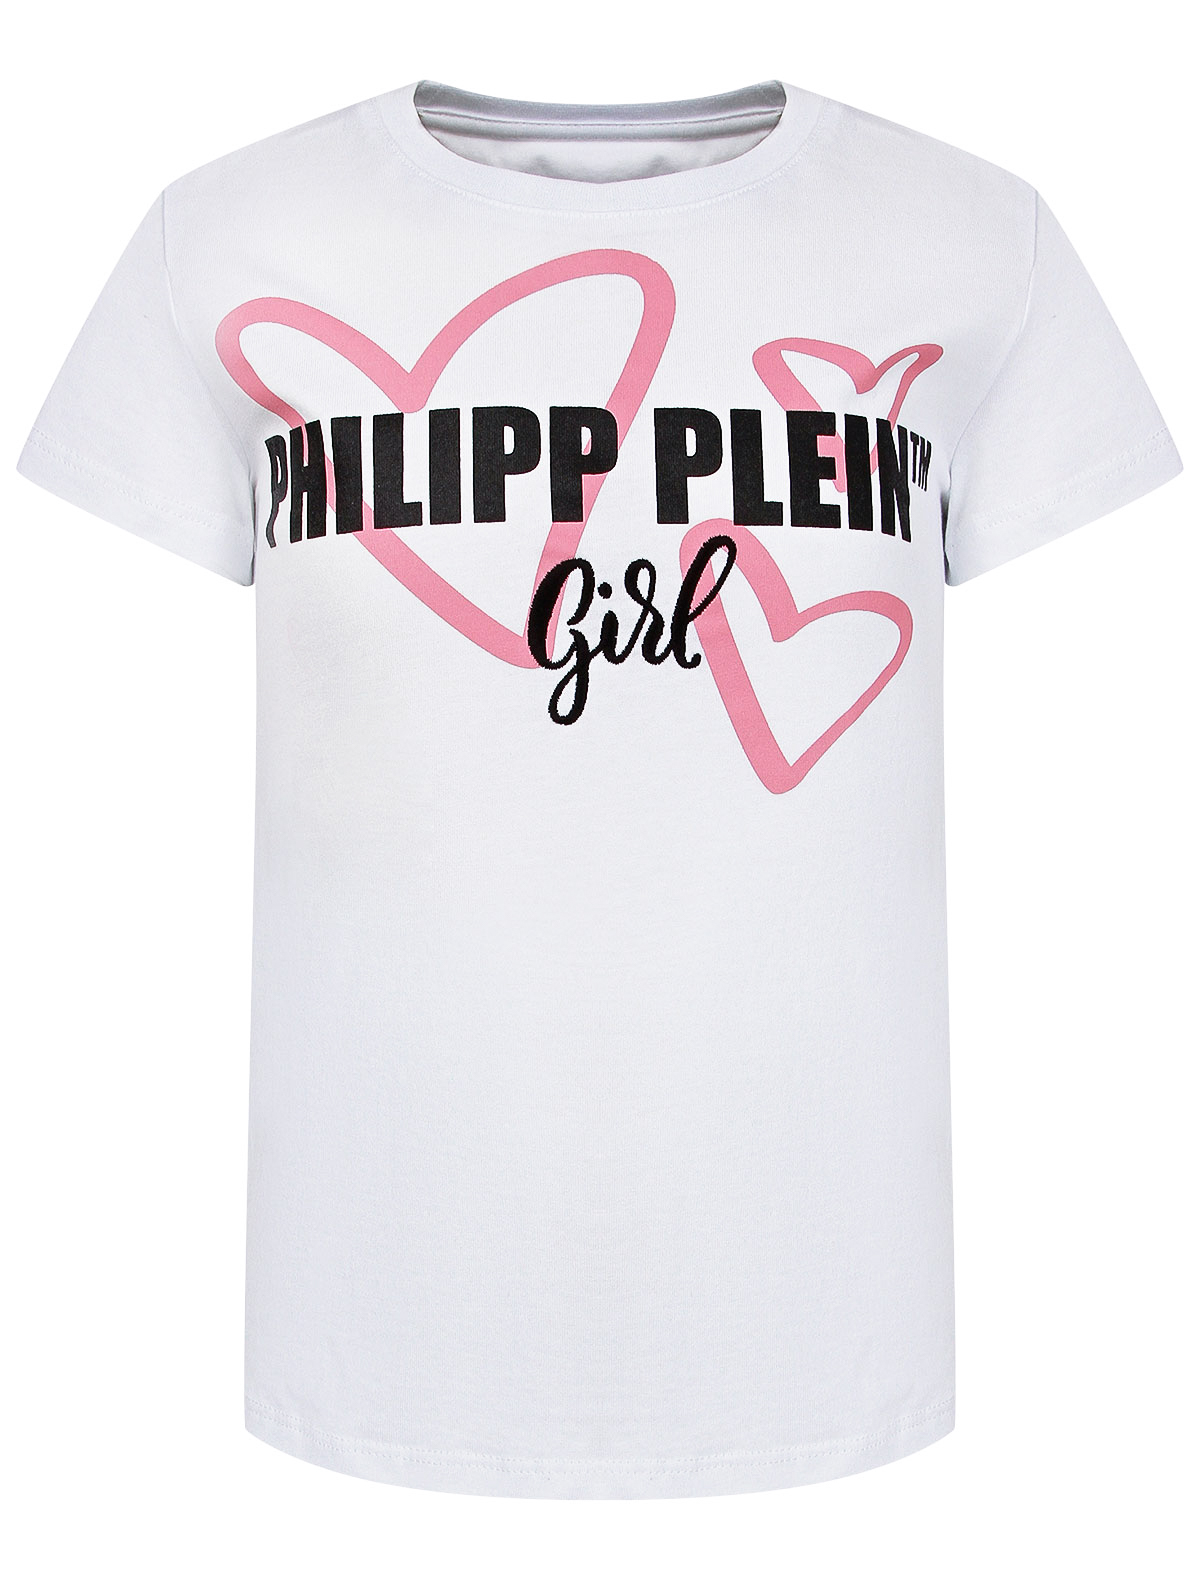 футболка philipp plein для девочки, белая